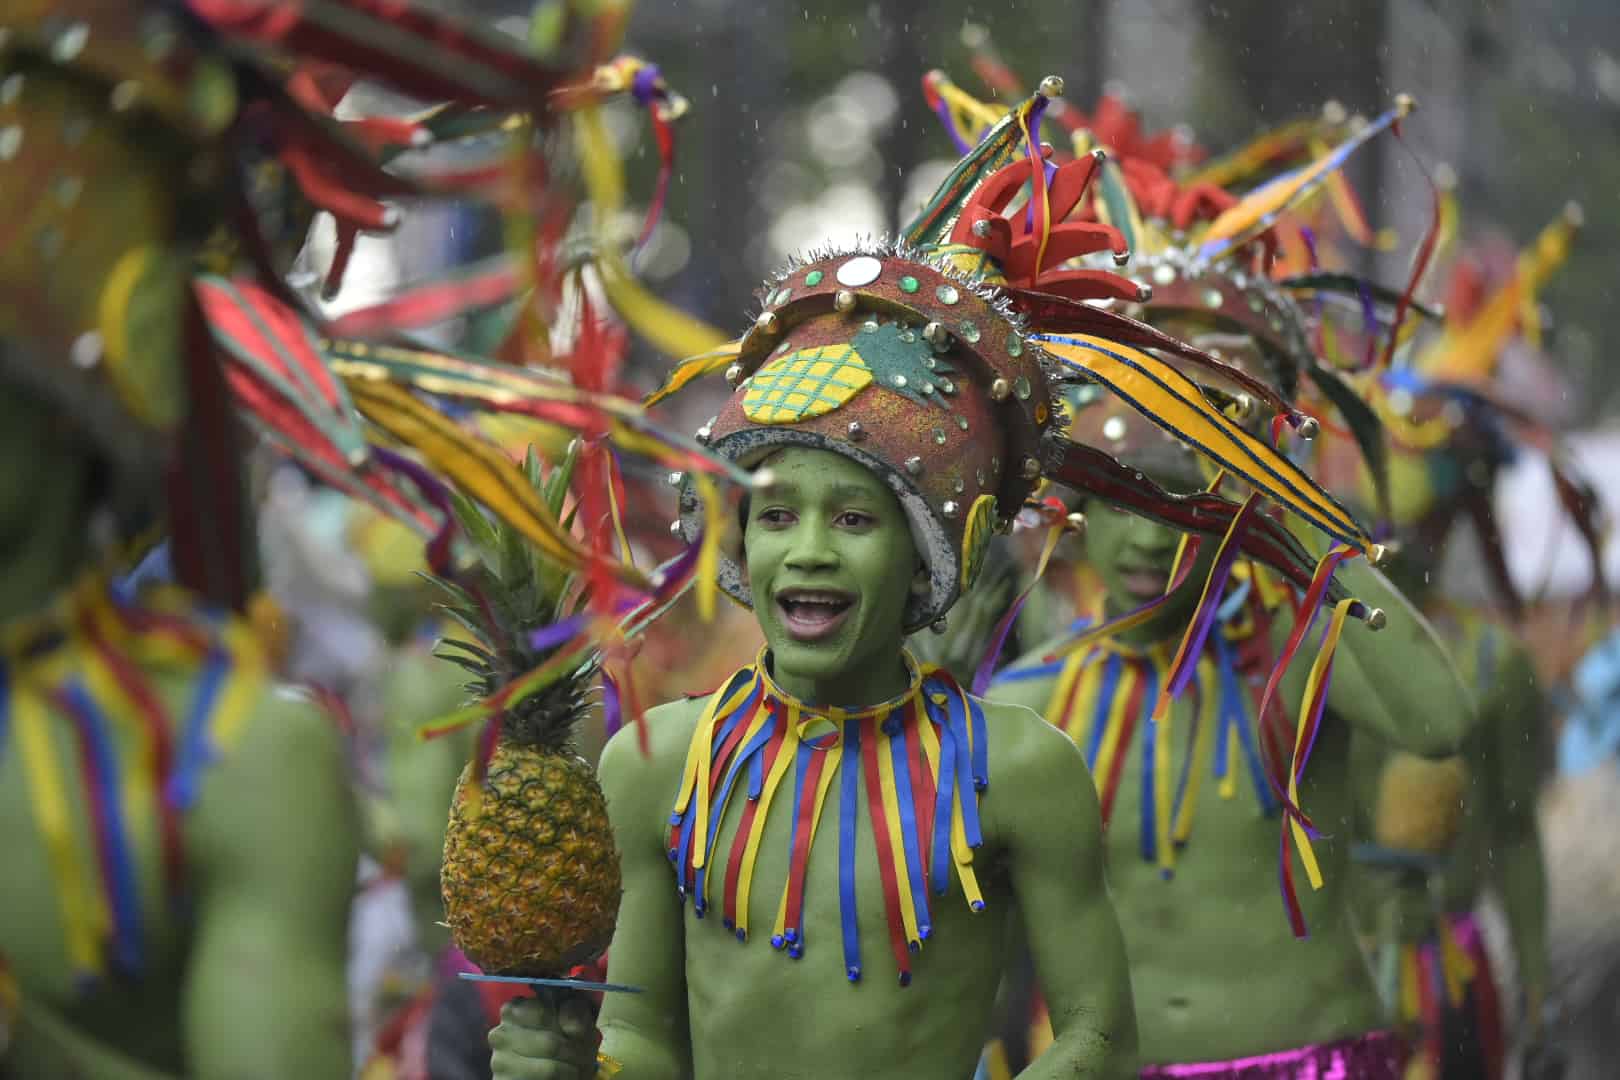 Los más jóvenes disfrutaron su participación en el desfile de carnaval.